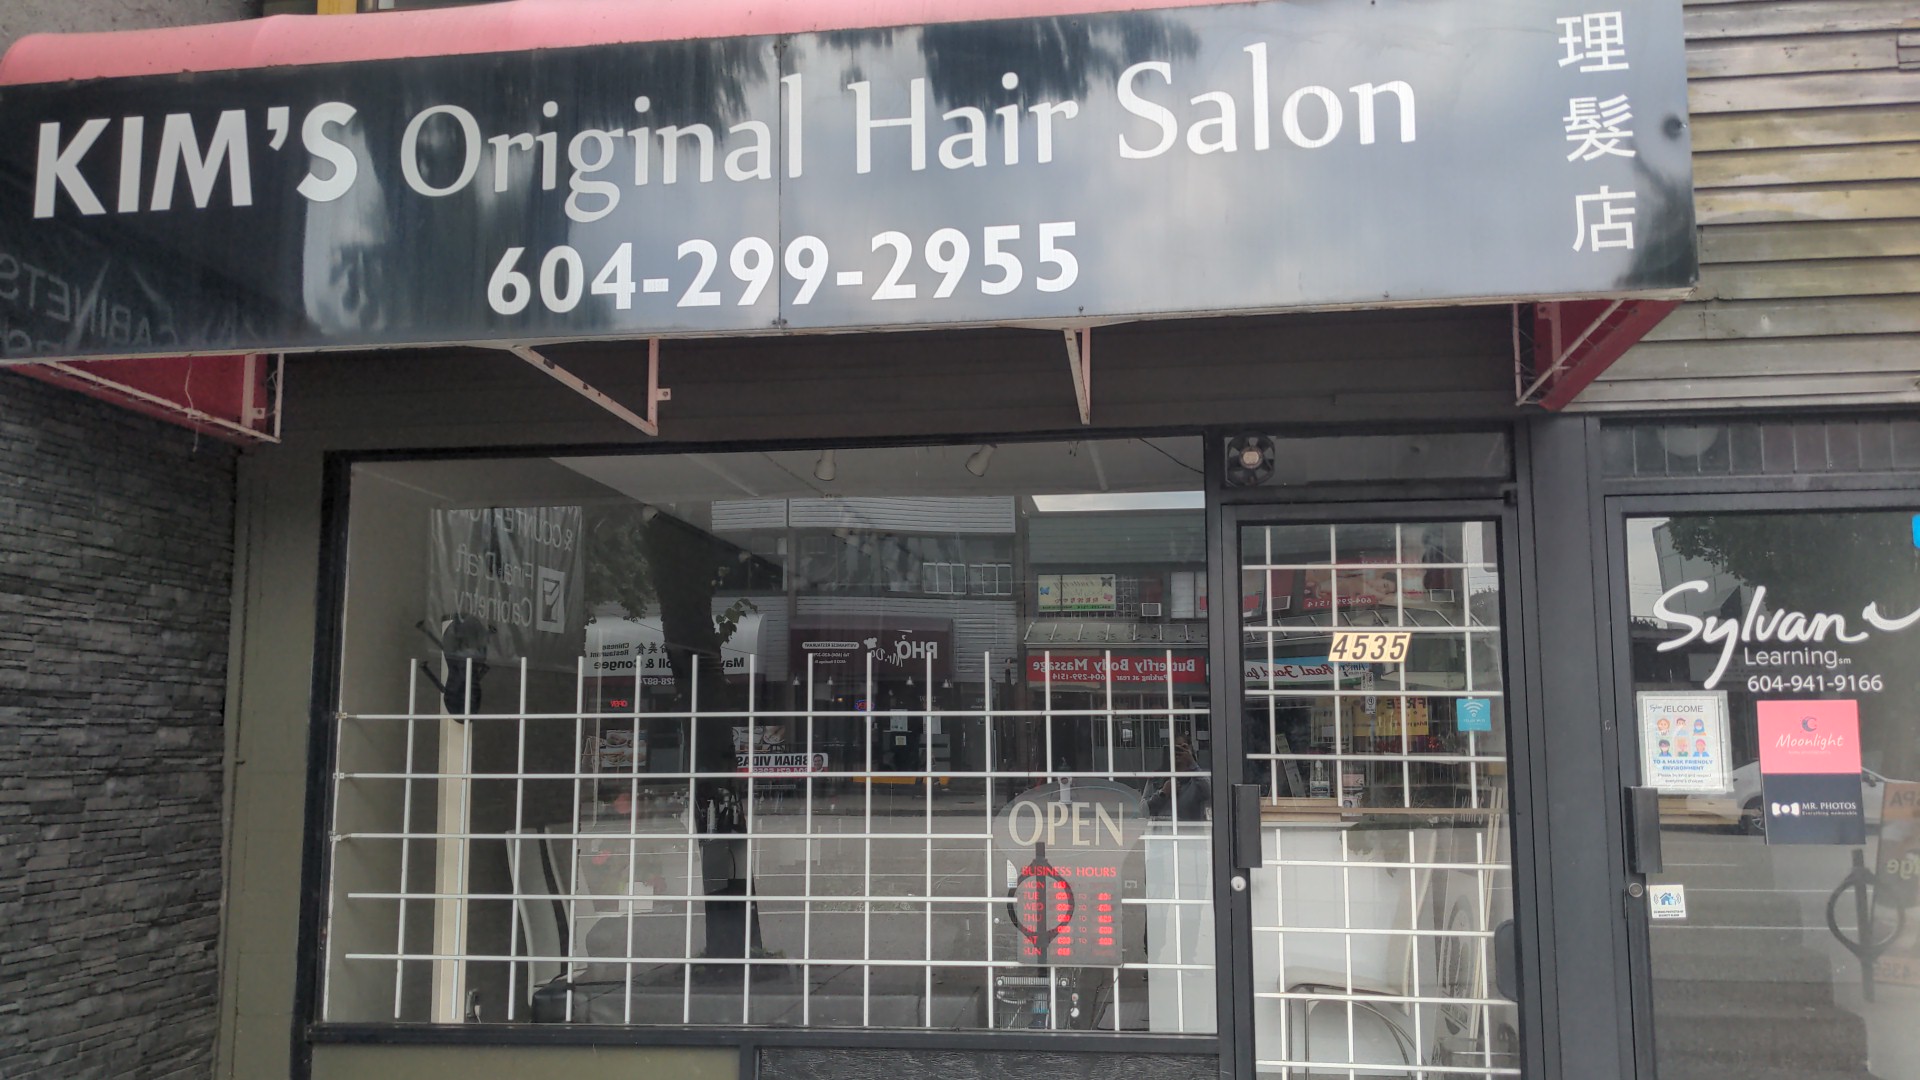 Kim's Original Hair Salon